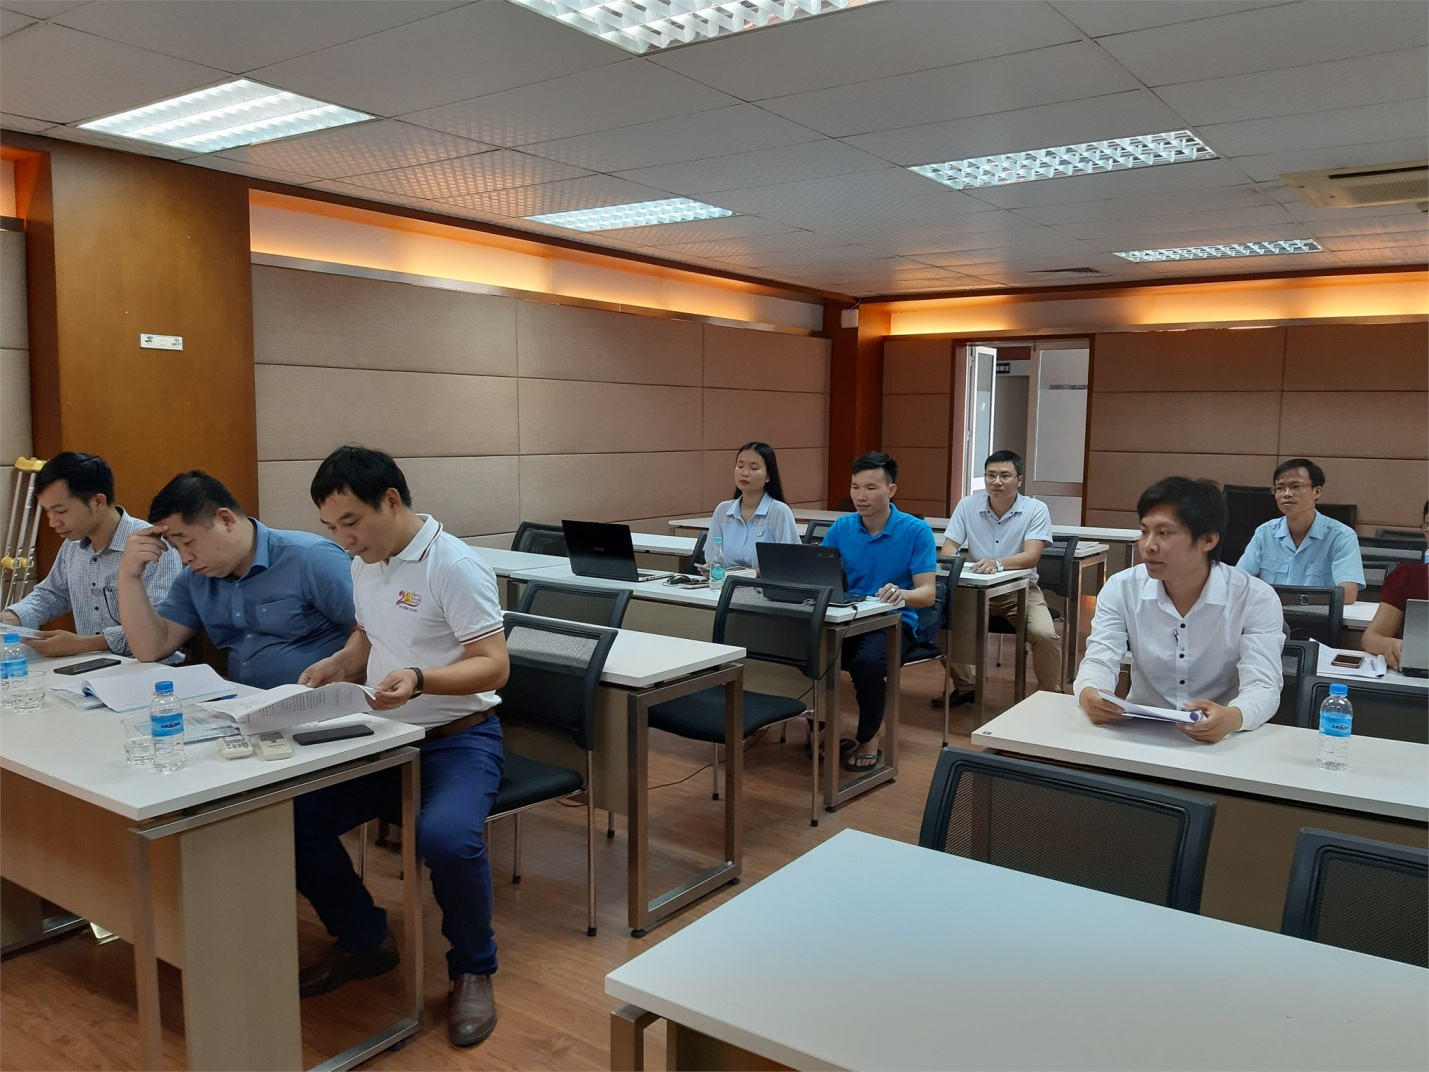 Thẩm định đề cương luận văn thạc sĩ cho học viên Cao học khóa 8 đợt 1 (2018-2020) ngành Kỹ thuật Điện